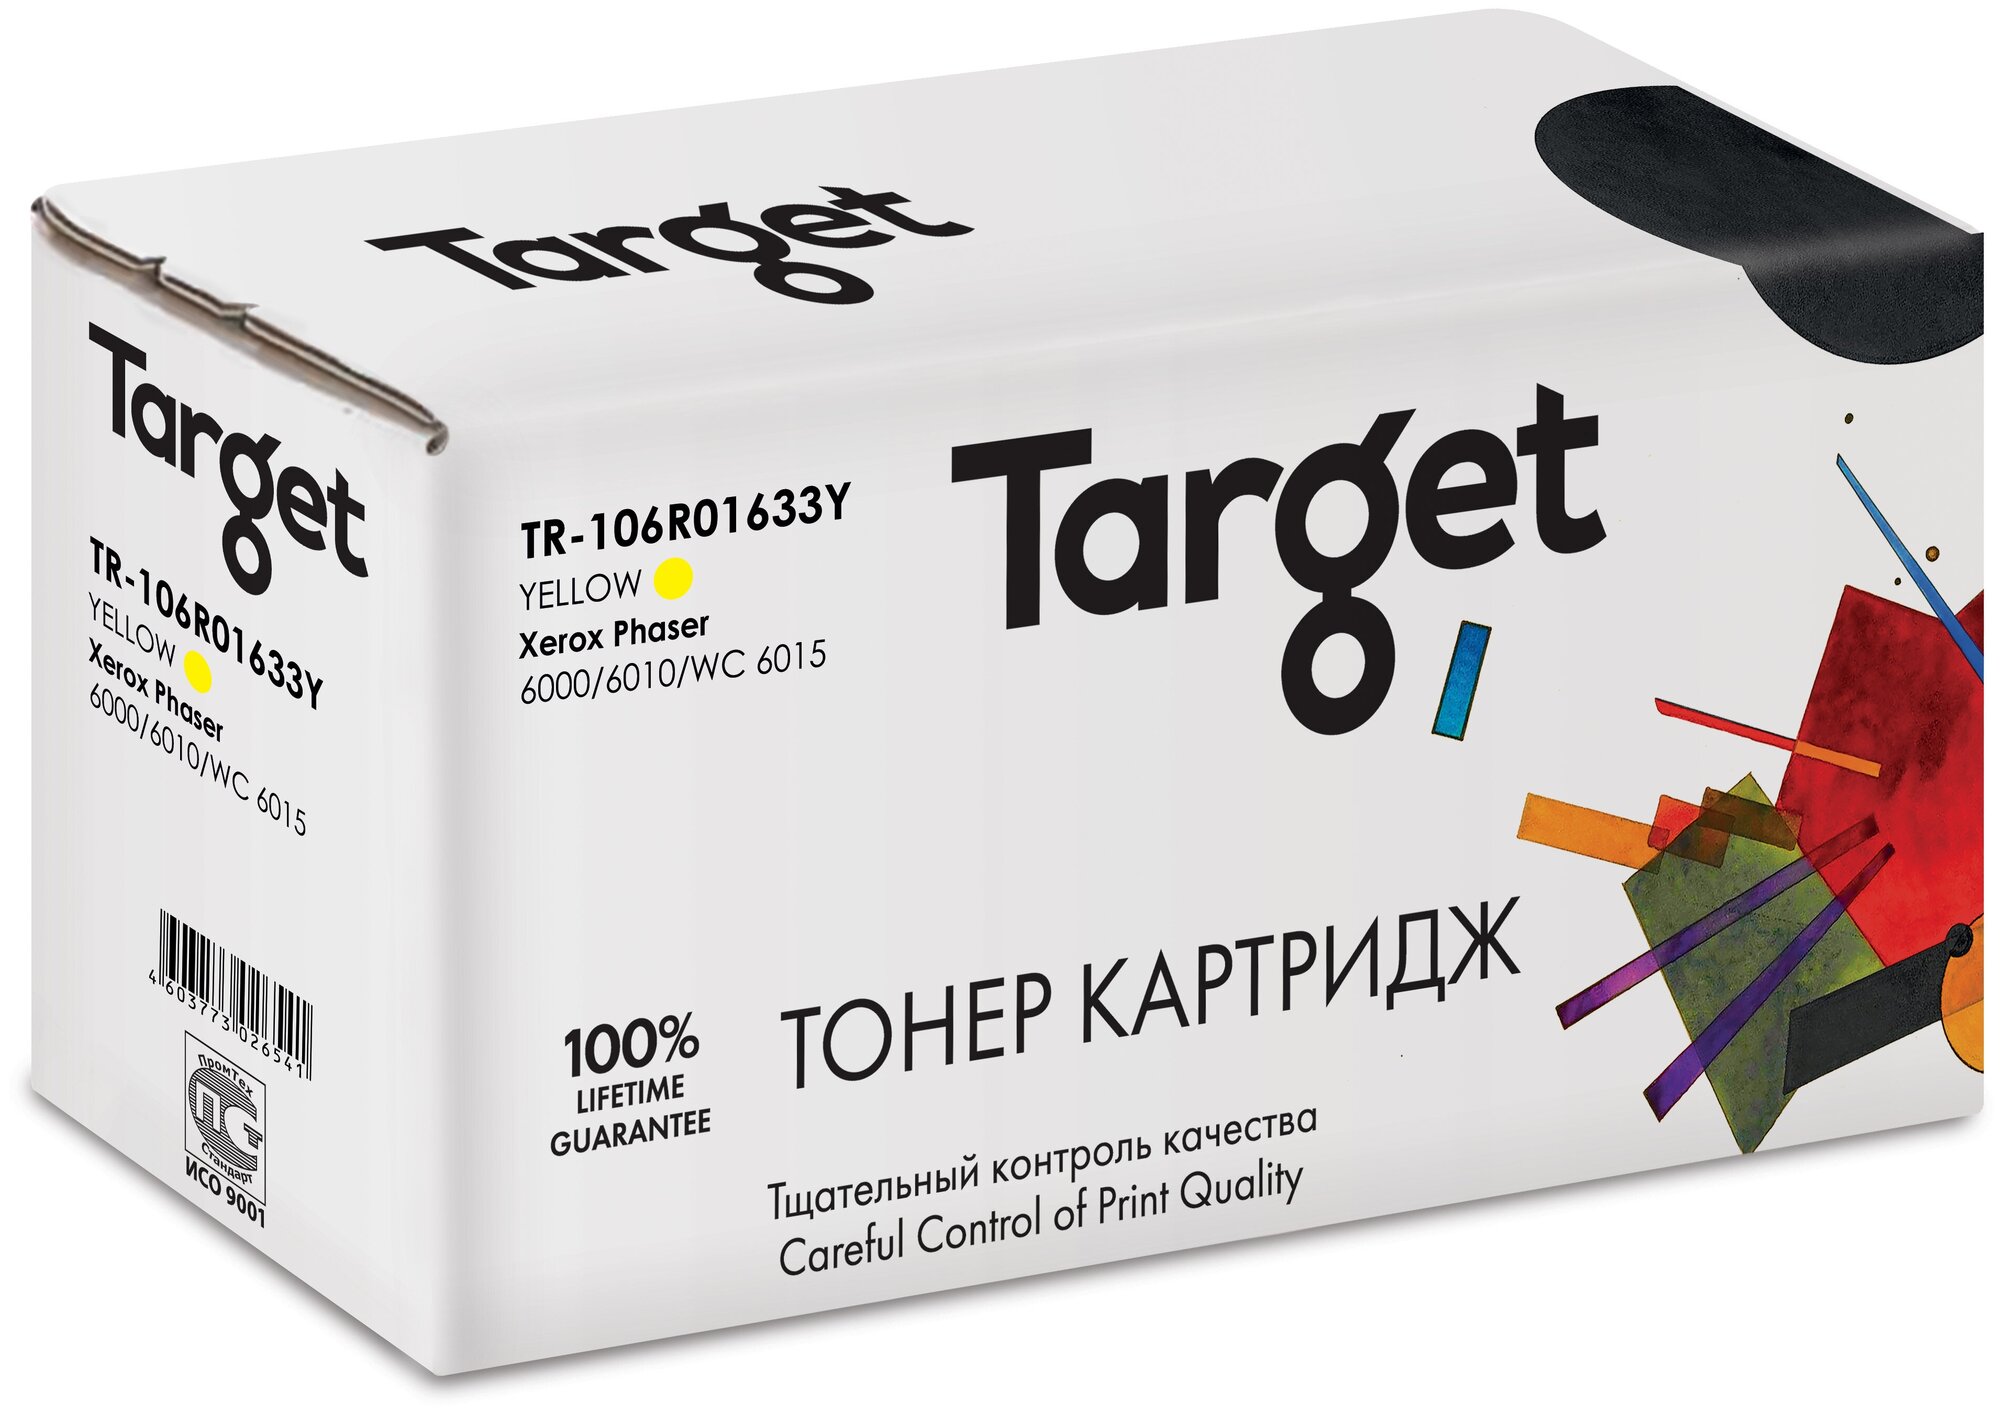 Тонер-картридж Target 106R01633Y, желтый, для лазерного принтера, совместимый